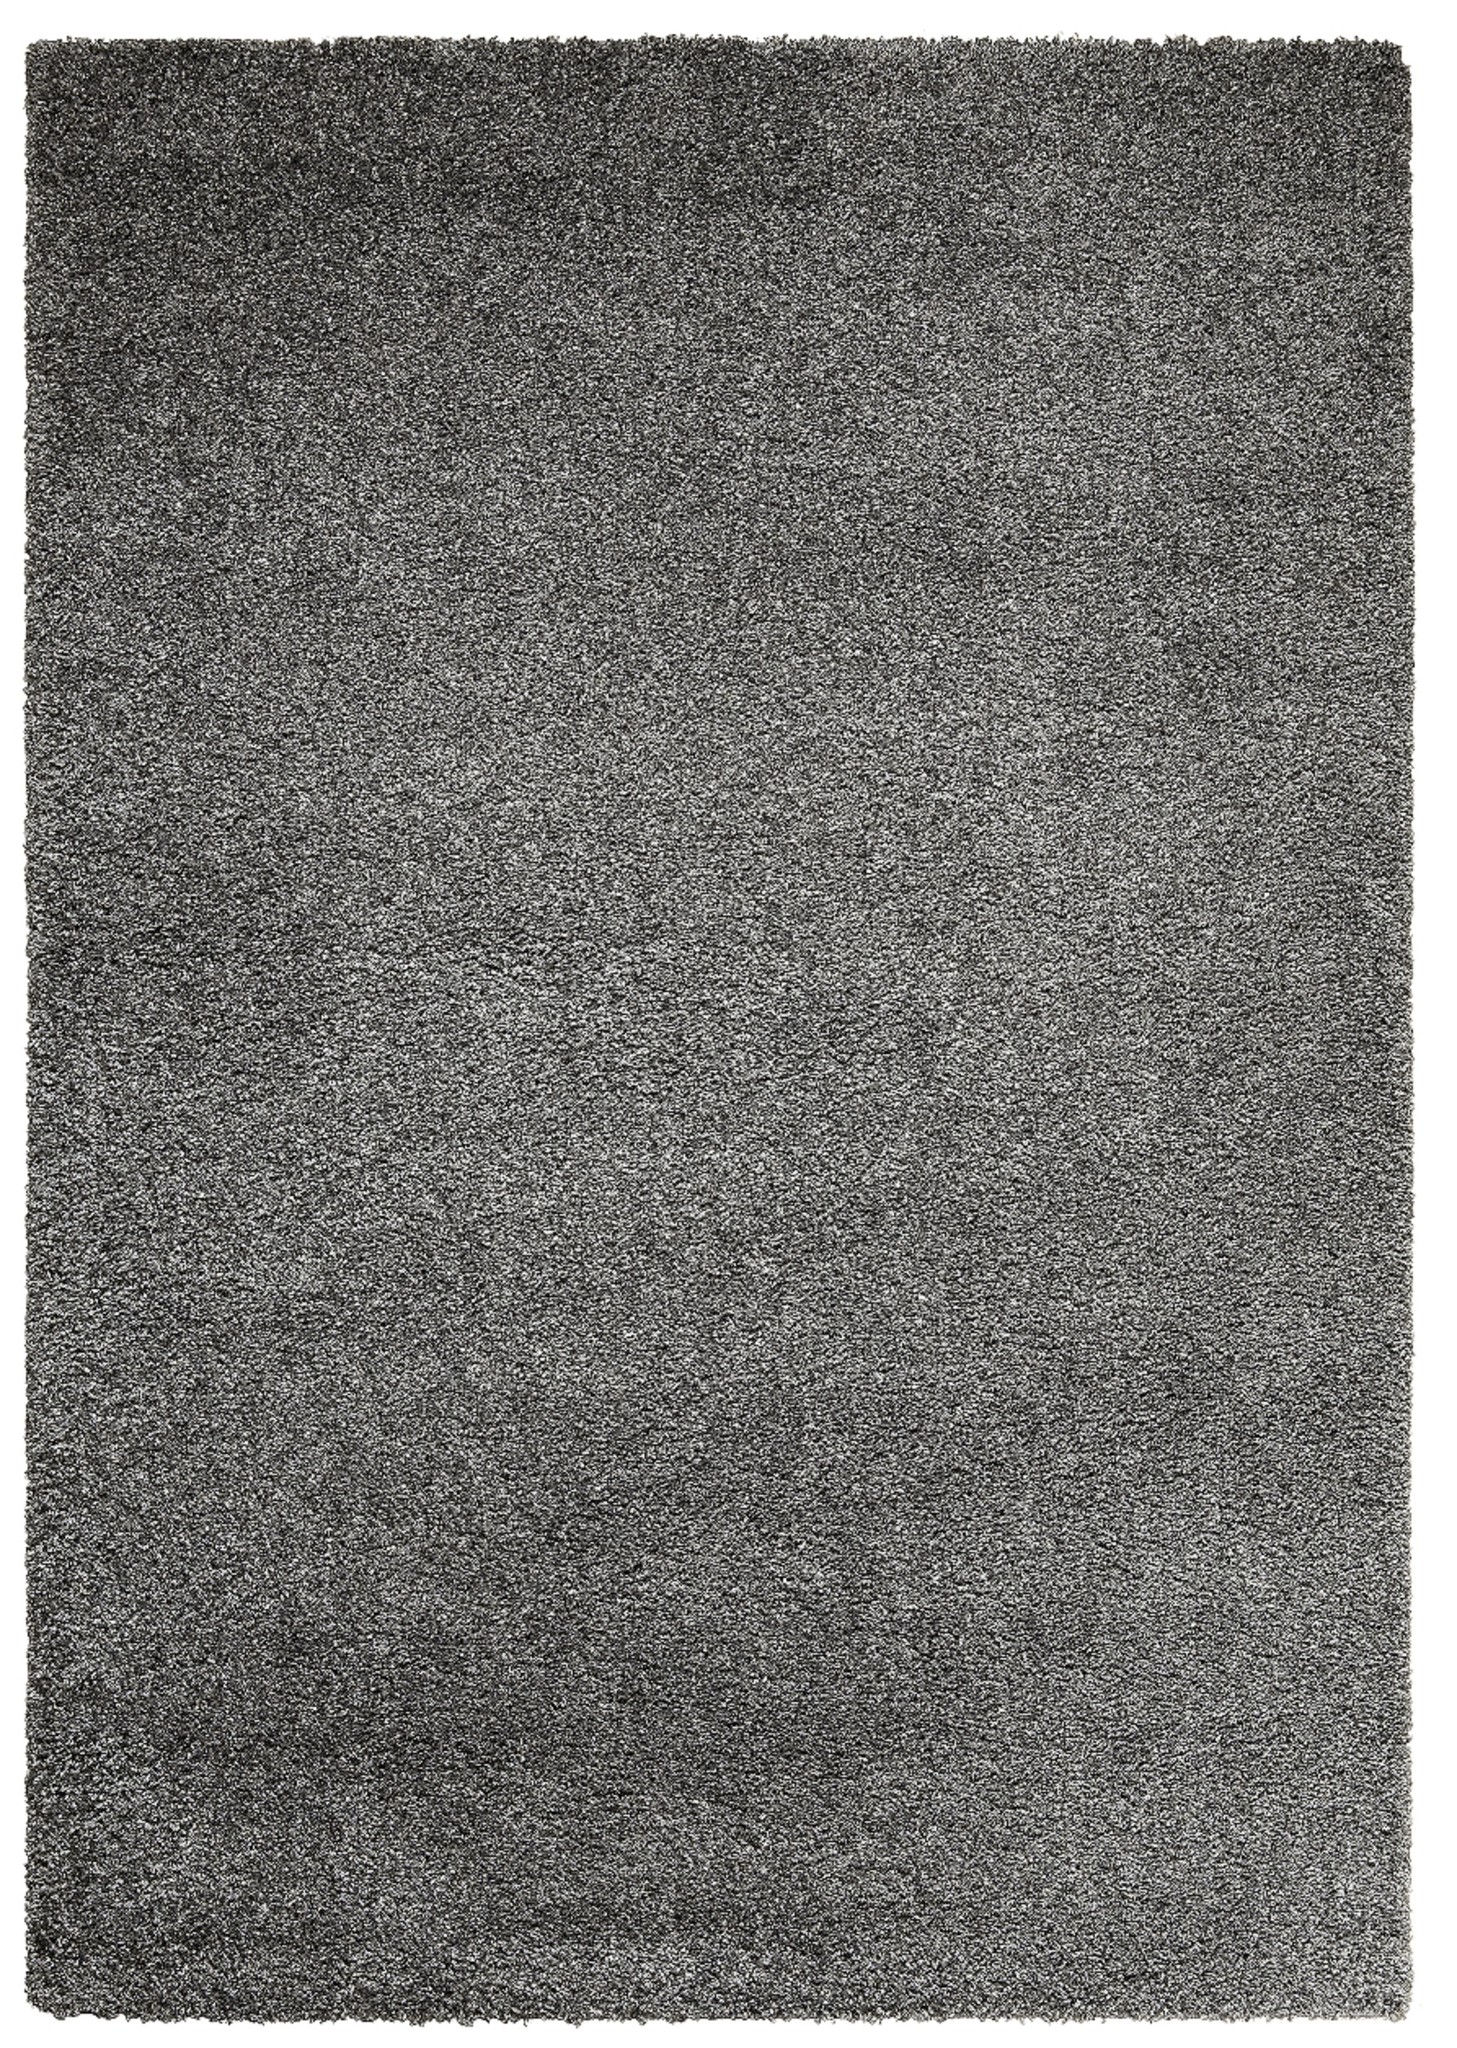 Moeras grond Stationair Hoogpolig tapijt grijs 30 mm | Onlinemattenshop